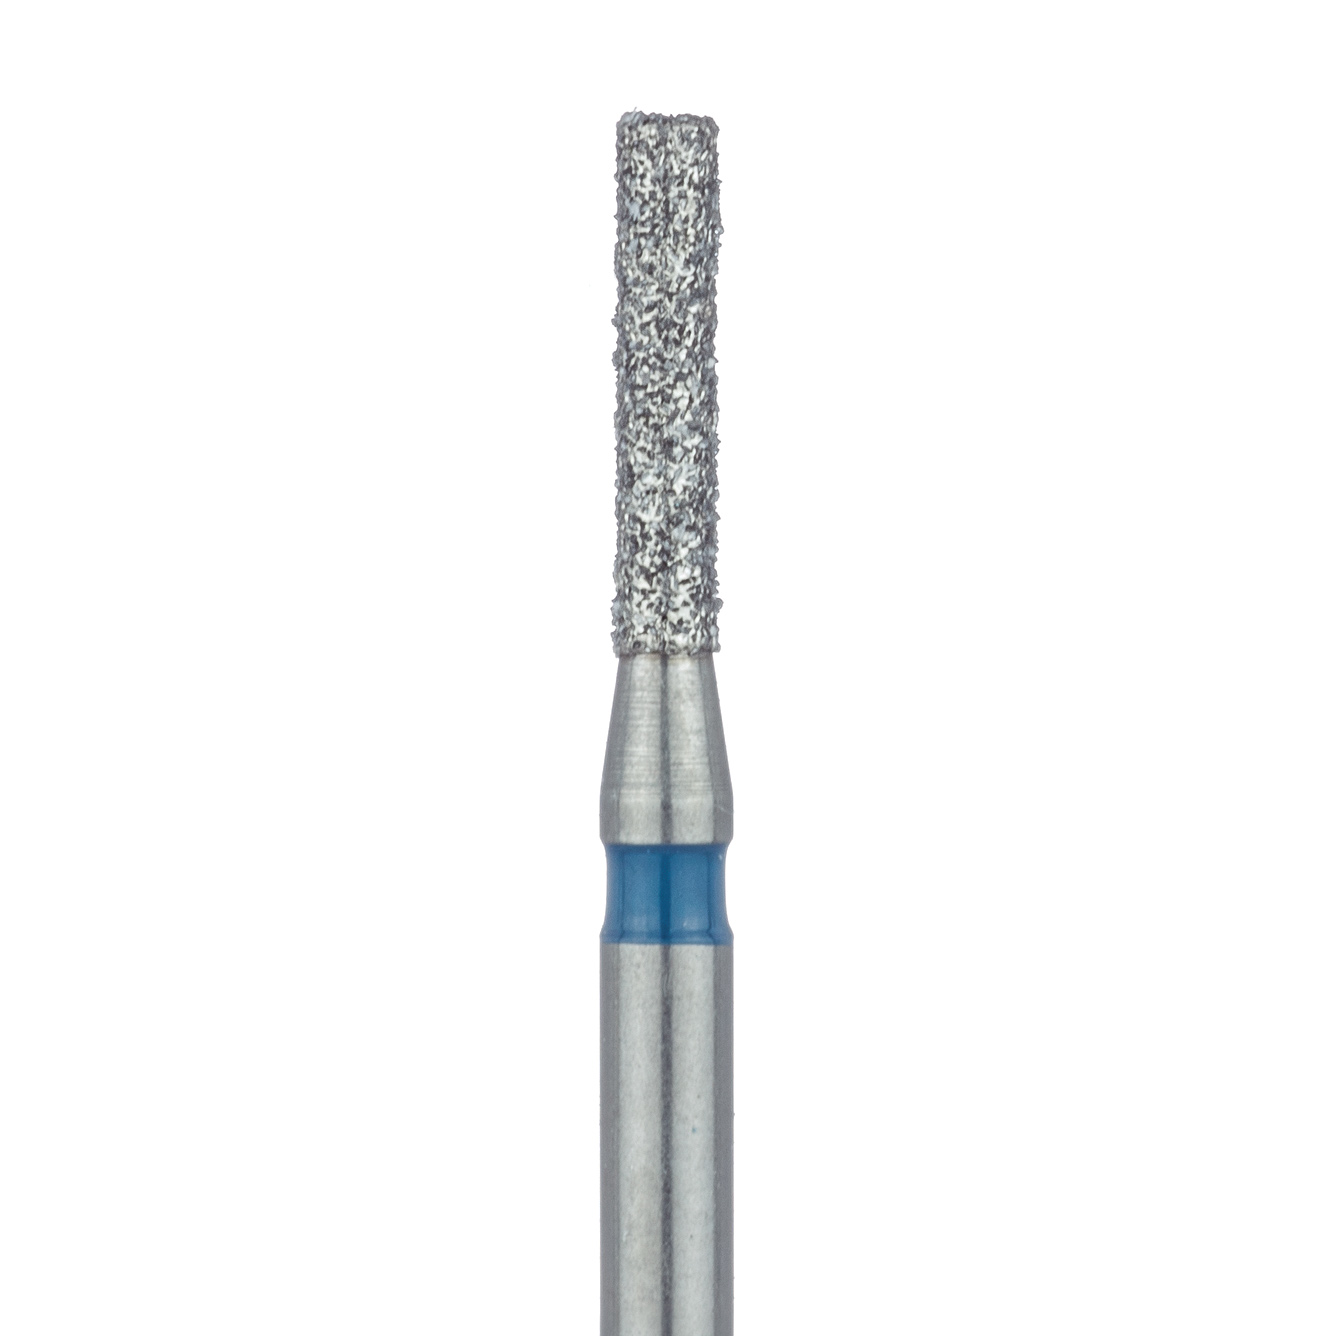 837-012-FG Long Cylinder Diamond Bur, 1.2mm Ø, Medium, FG